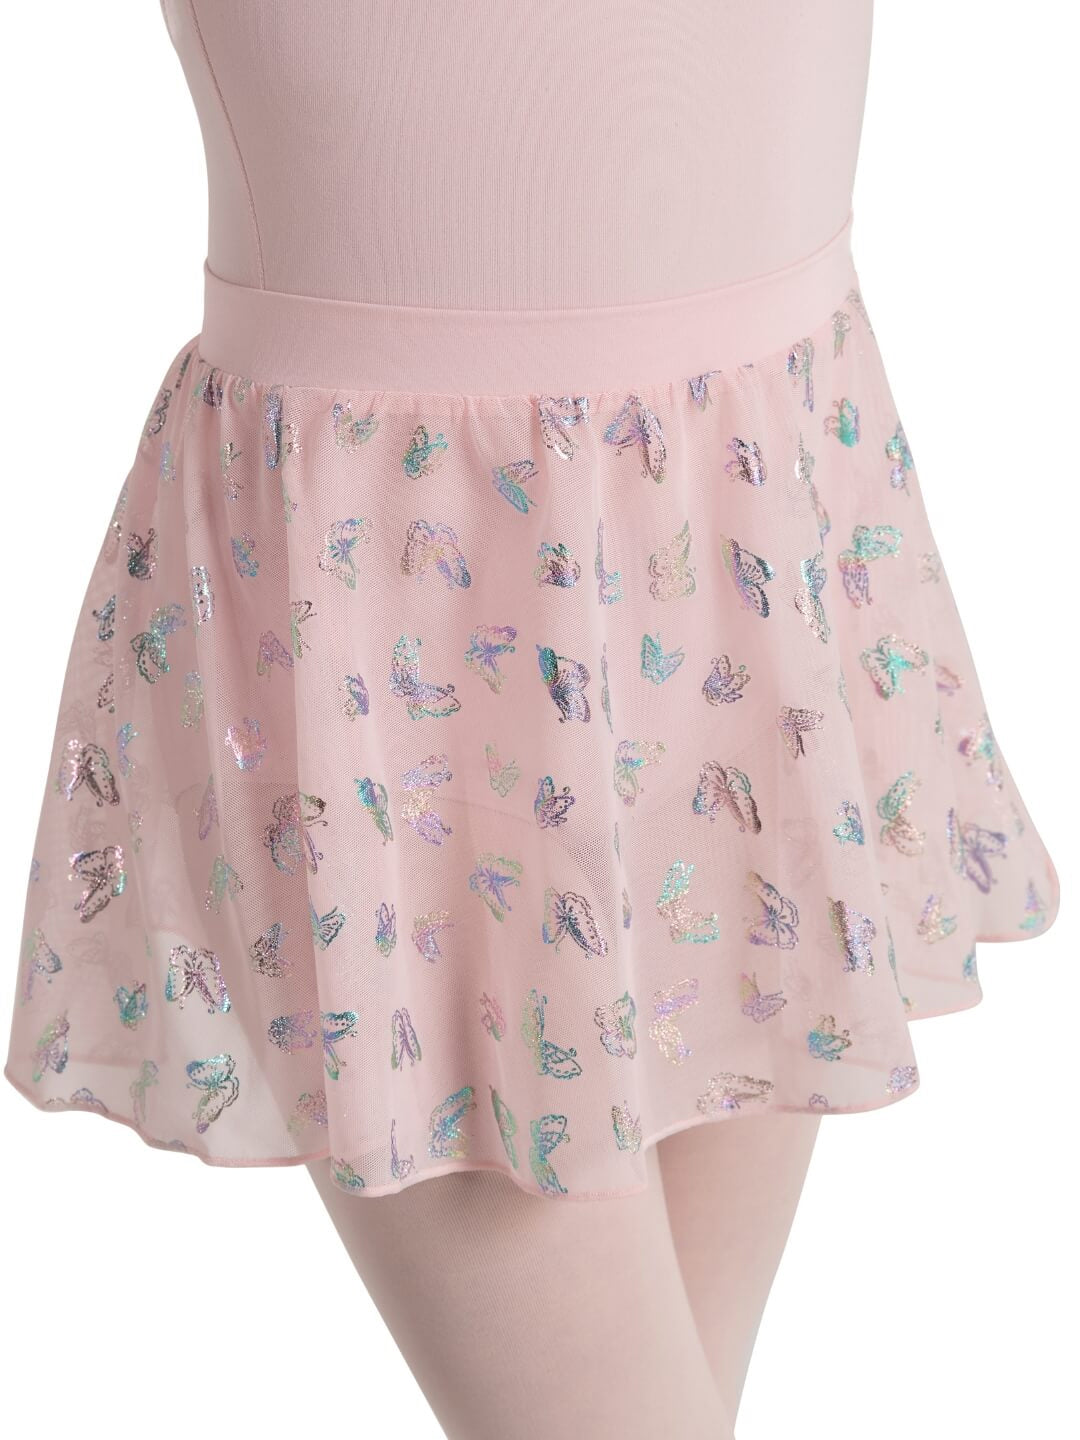 Social Butterfly Nova Skirt - Girls